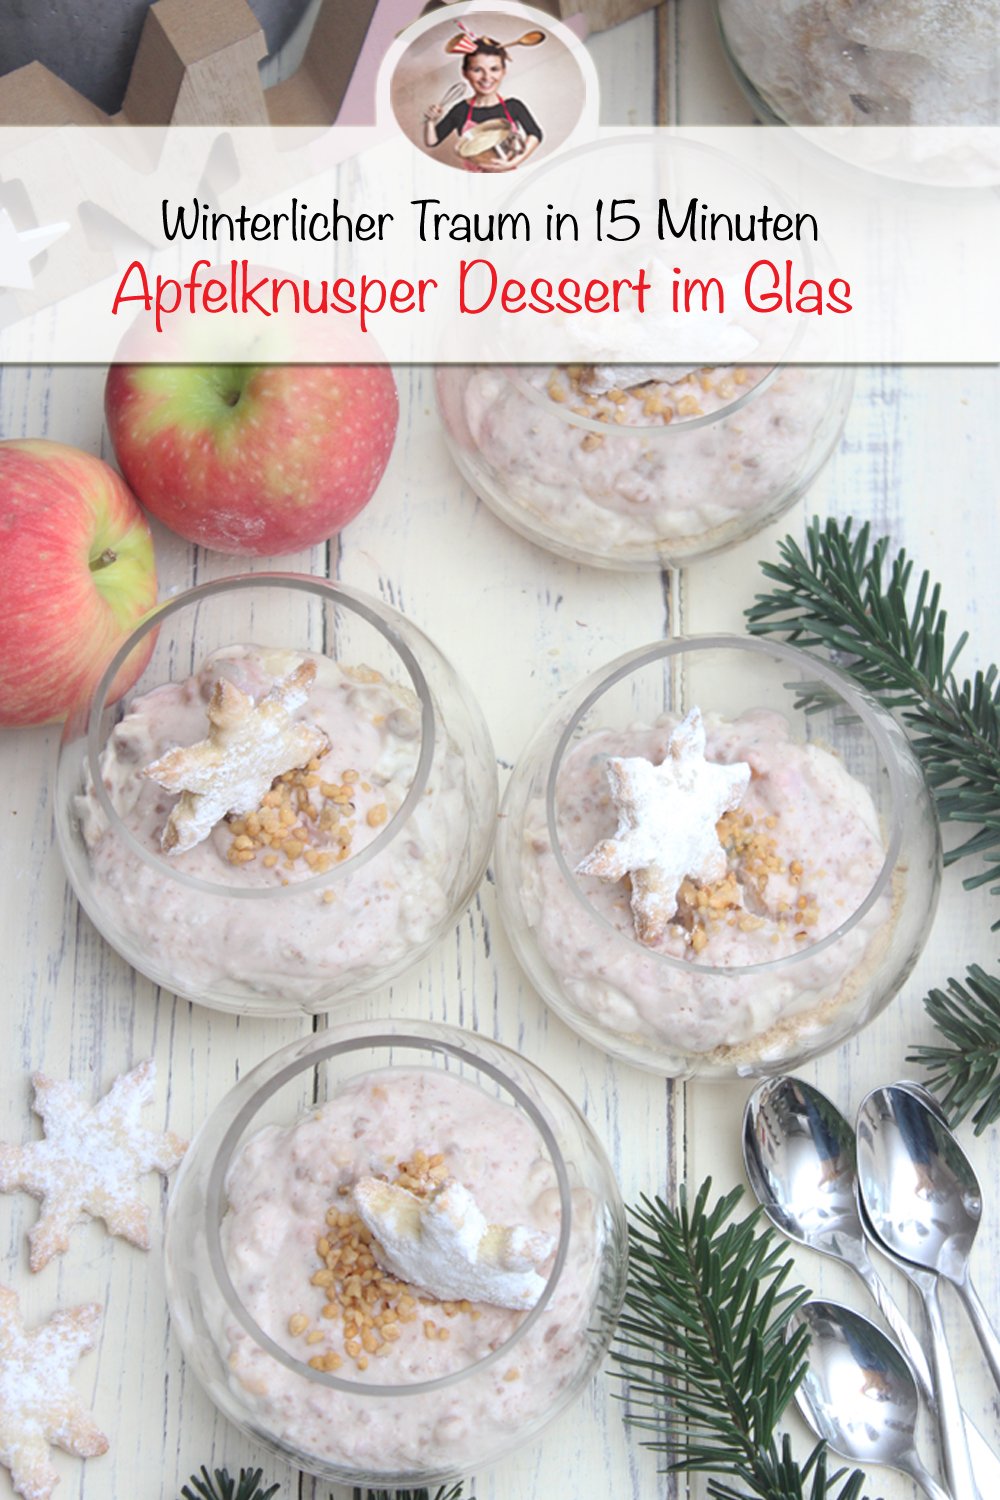 Apfelknusper-Dessert im Glas in nur 15 Minuten